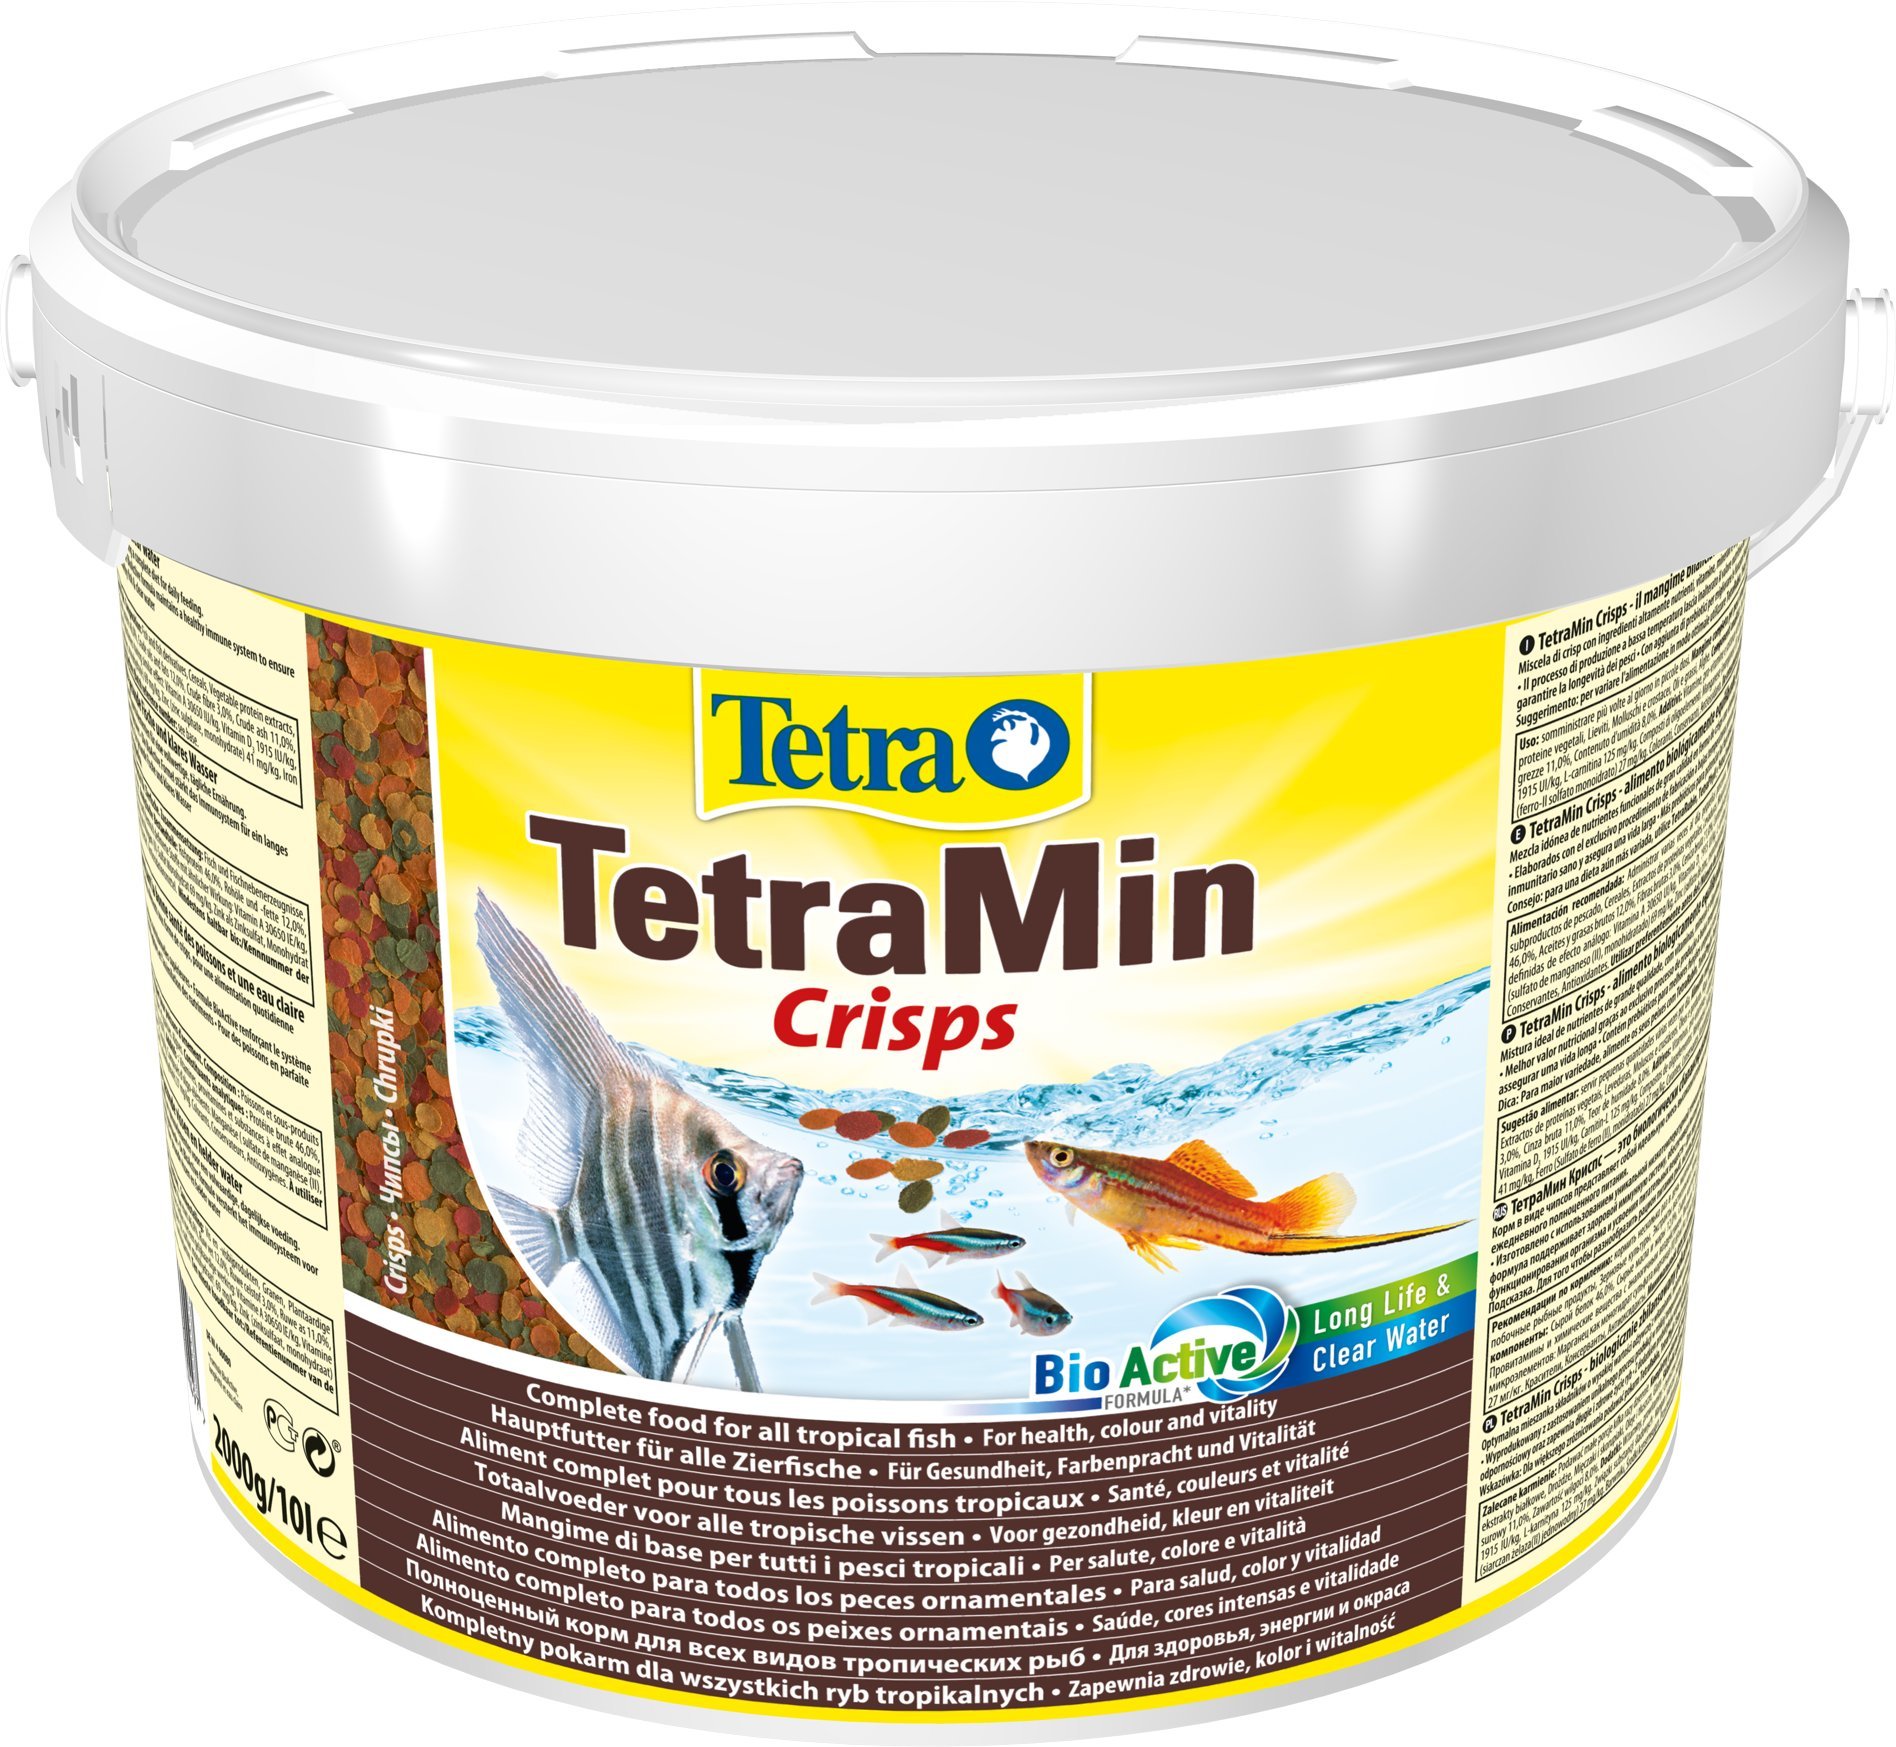 TetraMin Crisps - Fischfutter für alle tropischen Zierfische mit hohem Nährwert und minimaler Wasserbelastung, 10 l